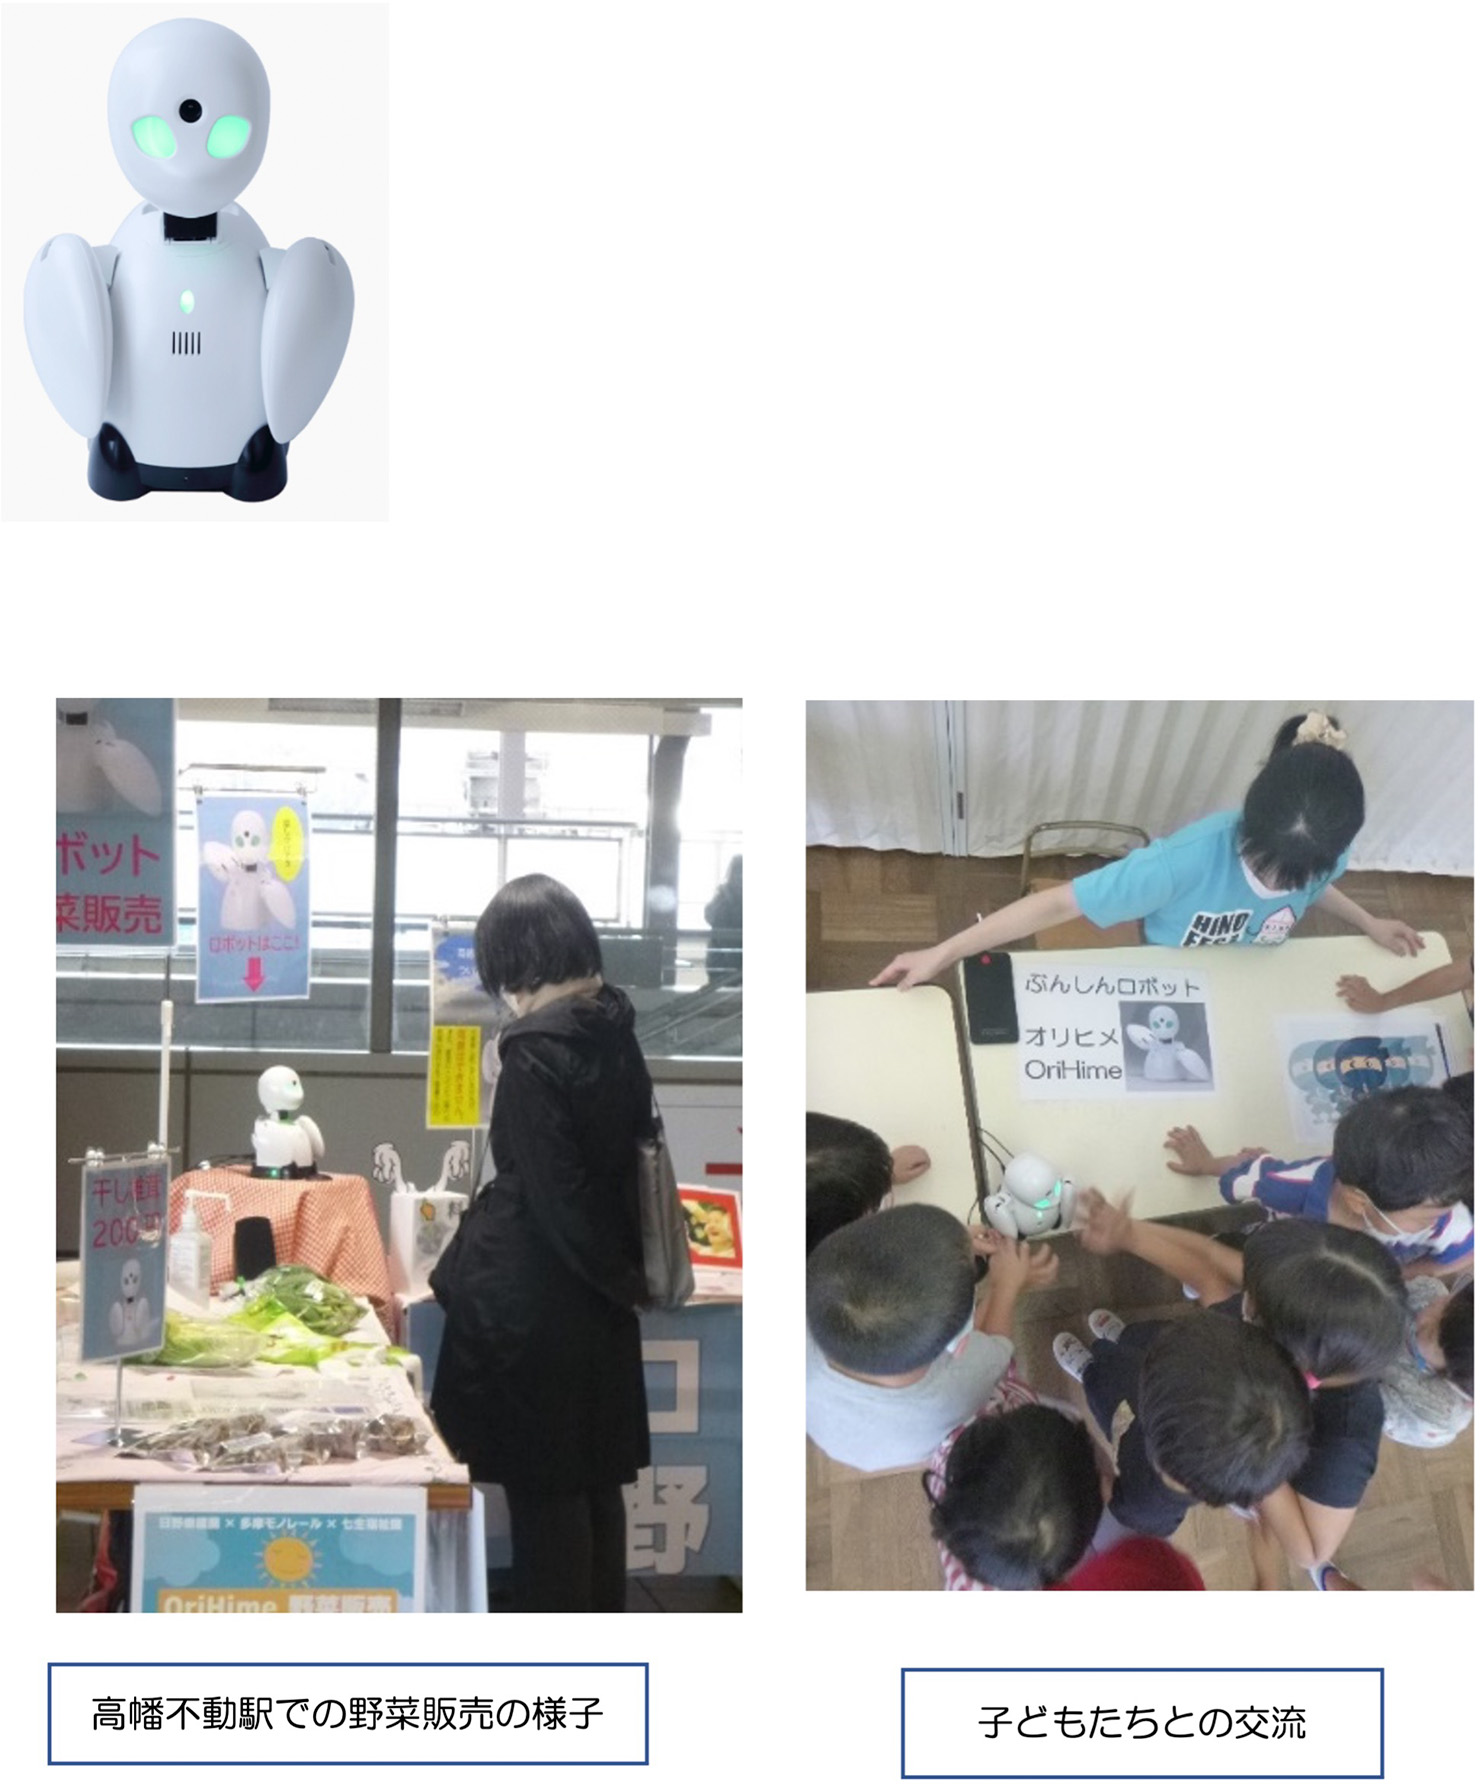 分身ロボットOriHime, 高幡不動駅での野菜販売の様子、子どもたちとの交流